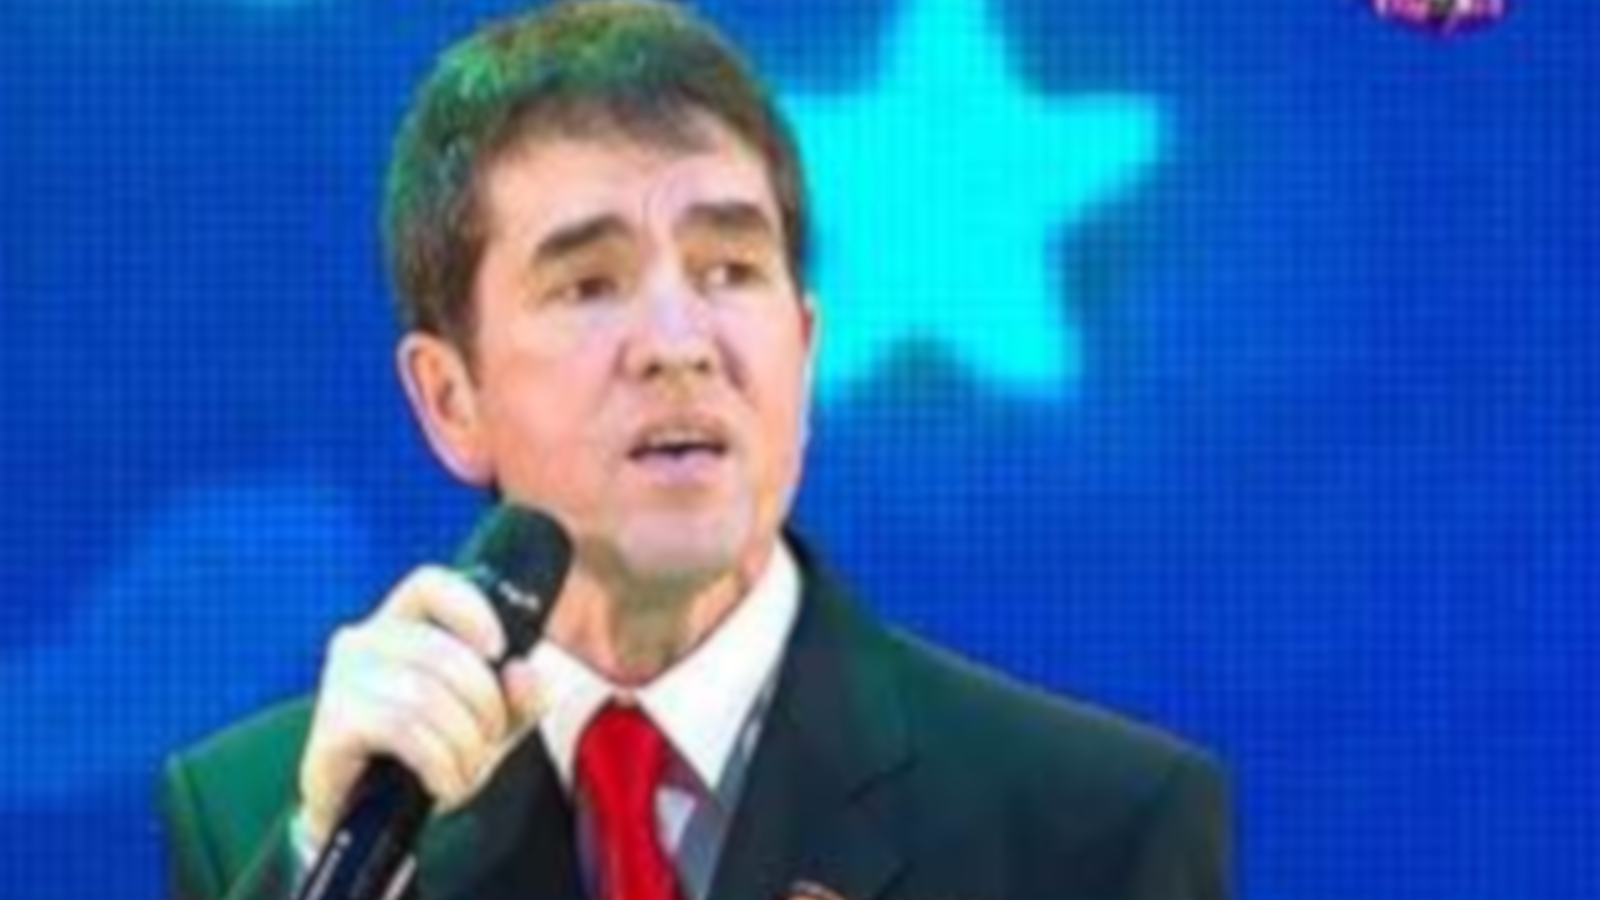 Заслуженный артист Башкортостана Радик Динәхмәтов решил повоевать